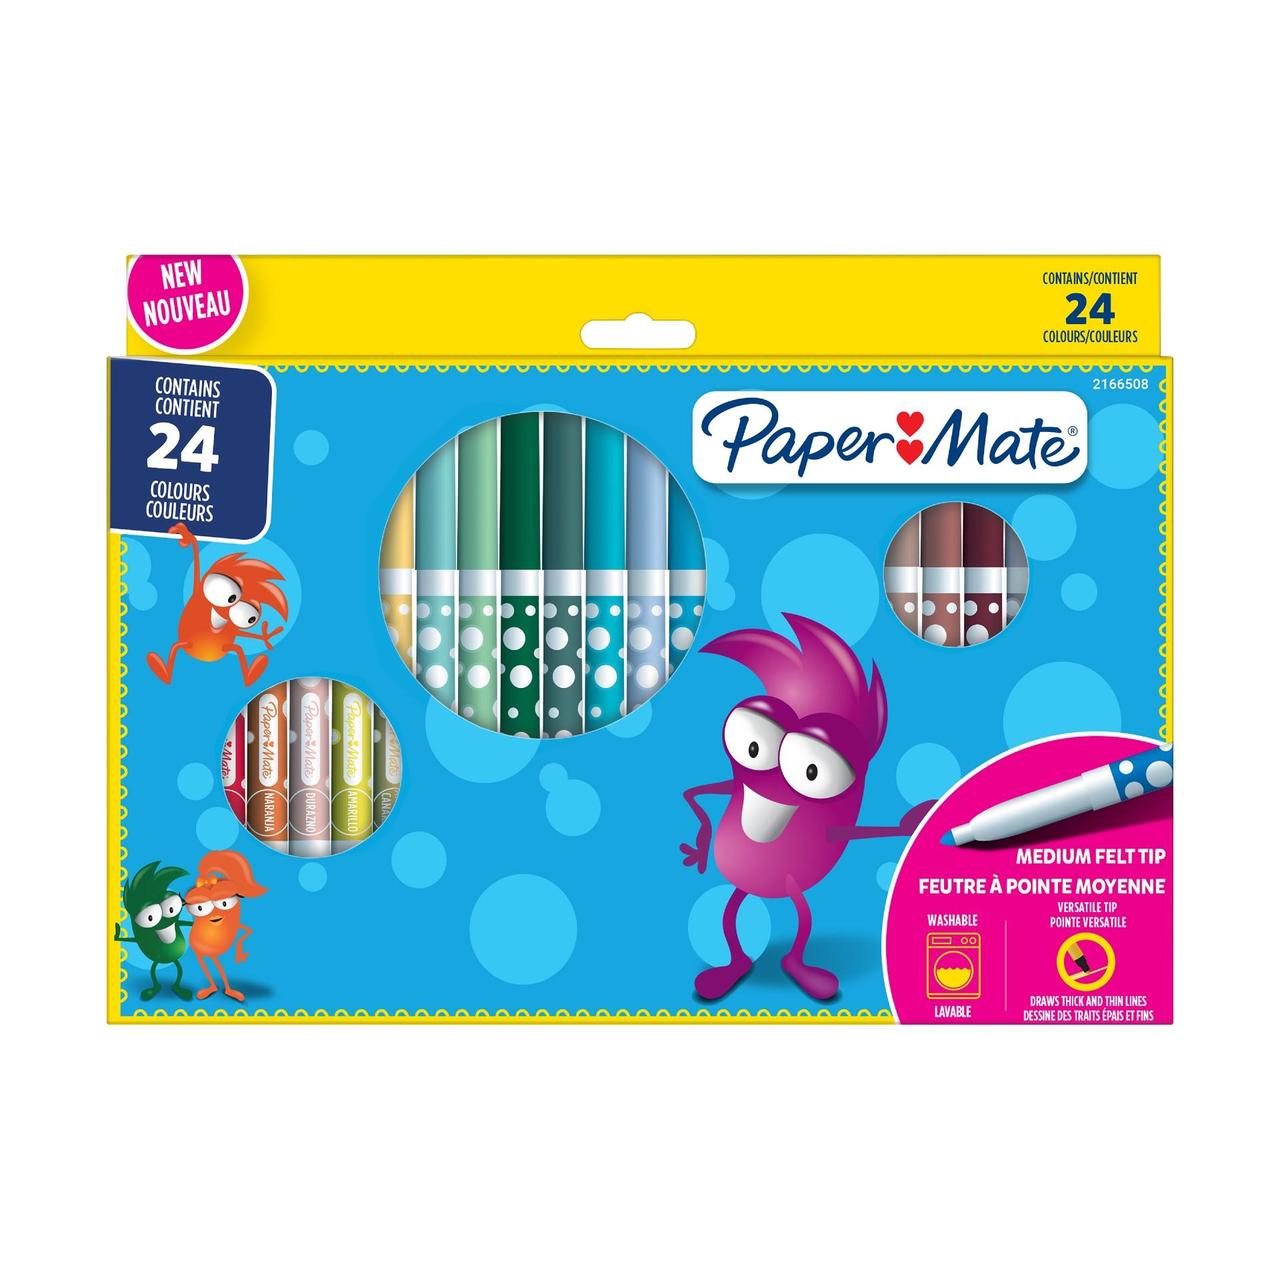 Paper Mate - Children's Colouring Felt Tip Pens 24-Blister (2166508) - Leker